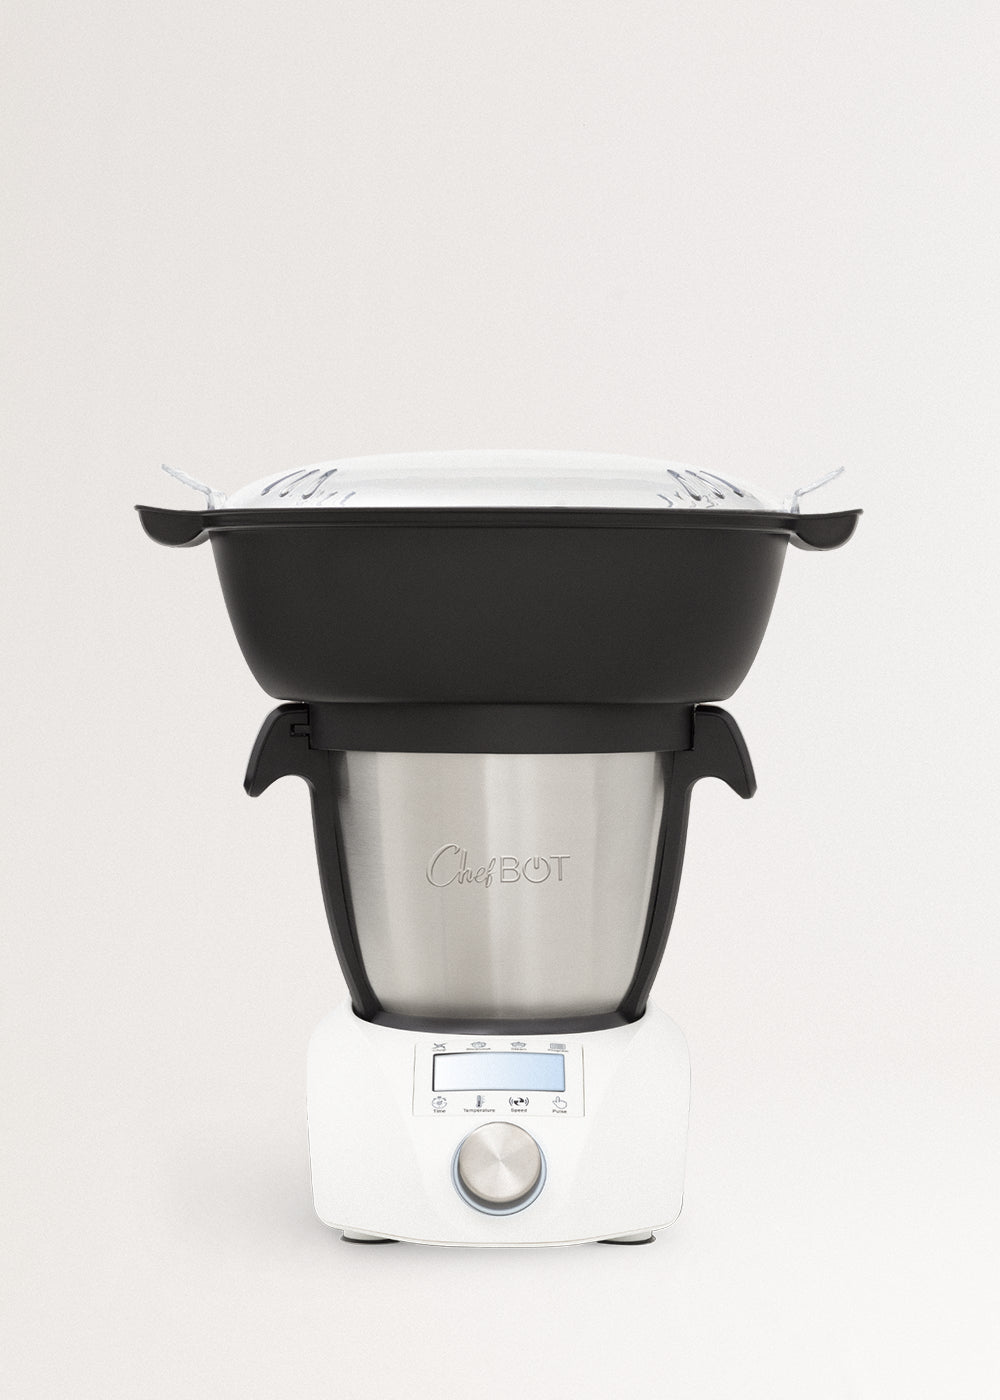 CHEFBOT COMPACT STEAMPRO (con Vaporera) - Robot Inteligente de Cocina